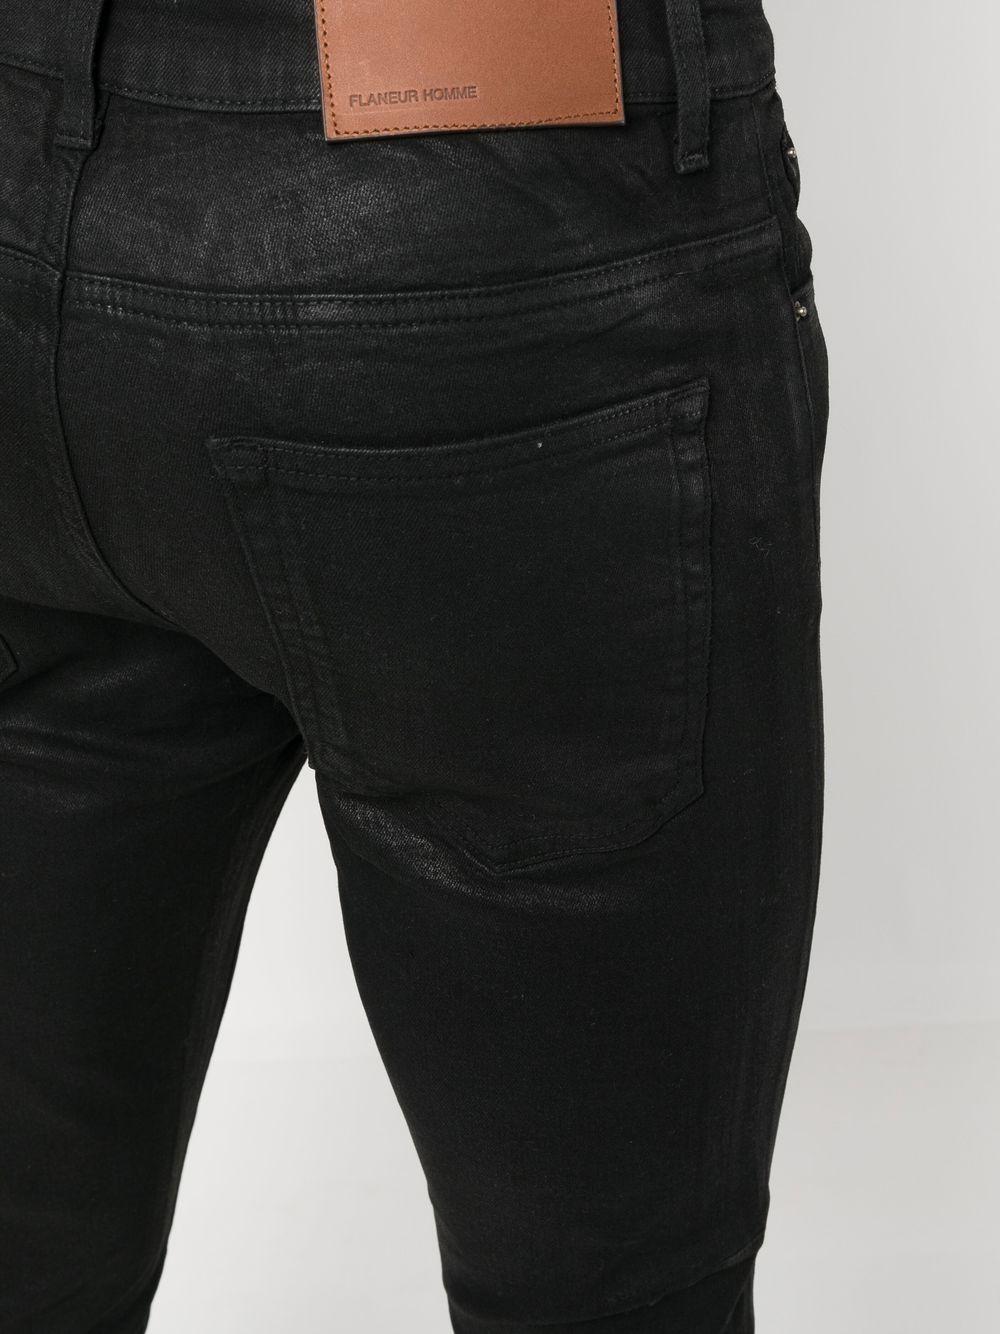 FLANEUR HOMME Essential Skinny Jeans in Black Men Lyst